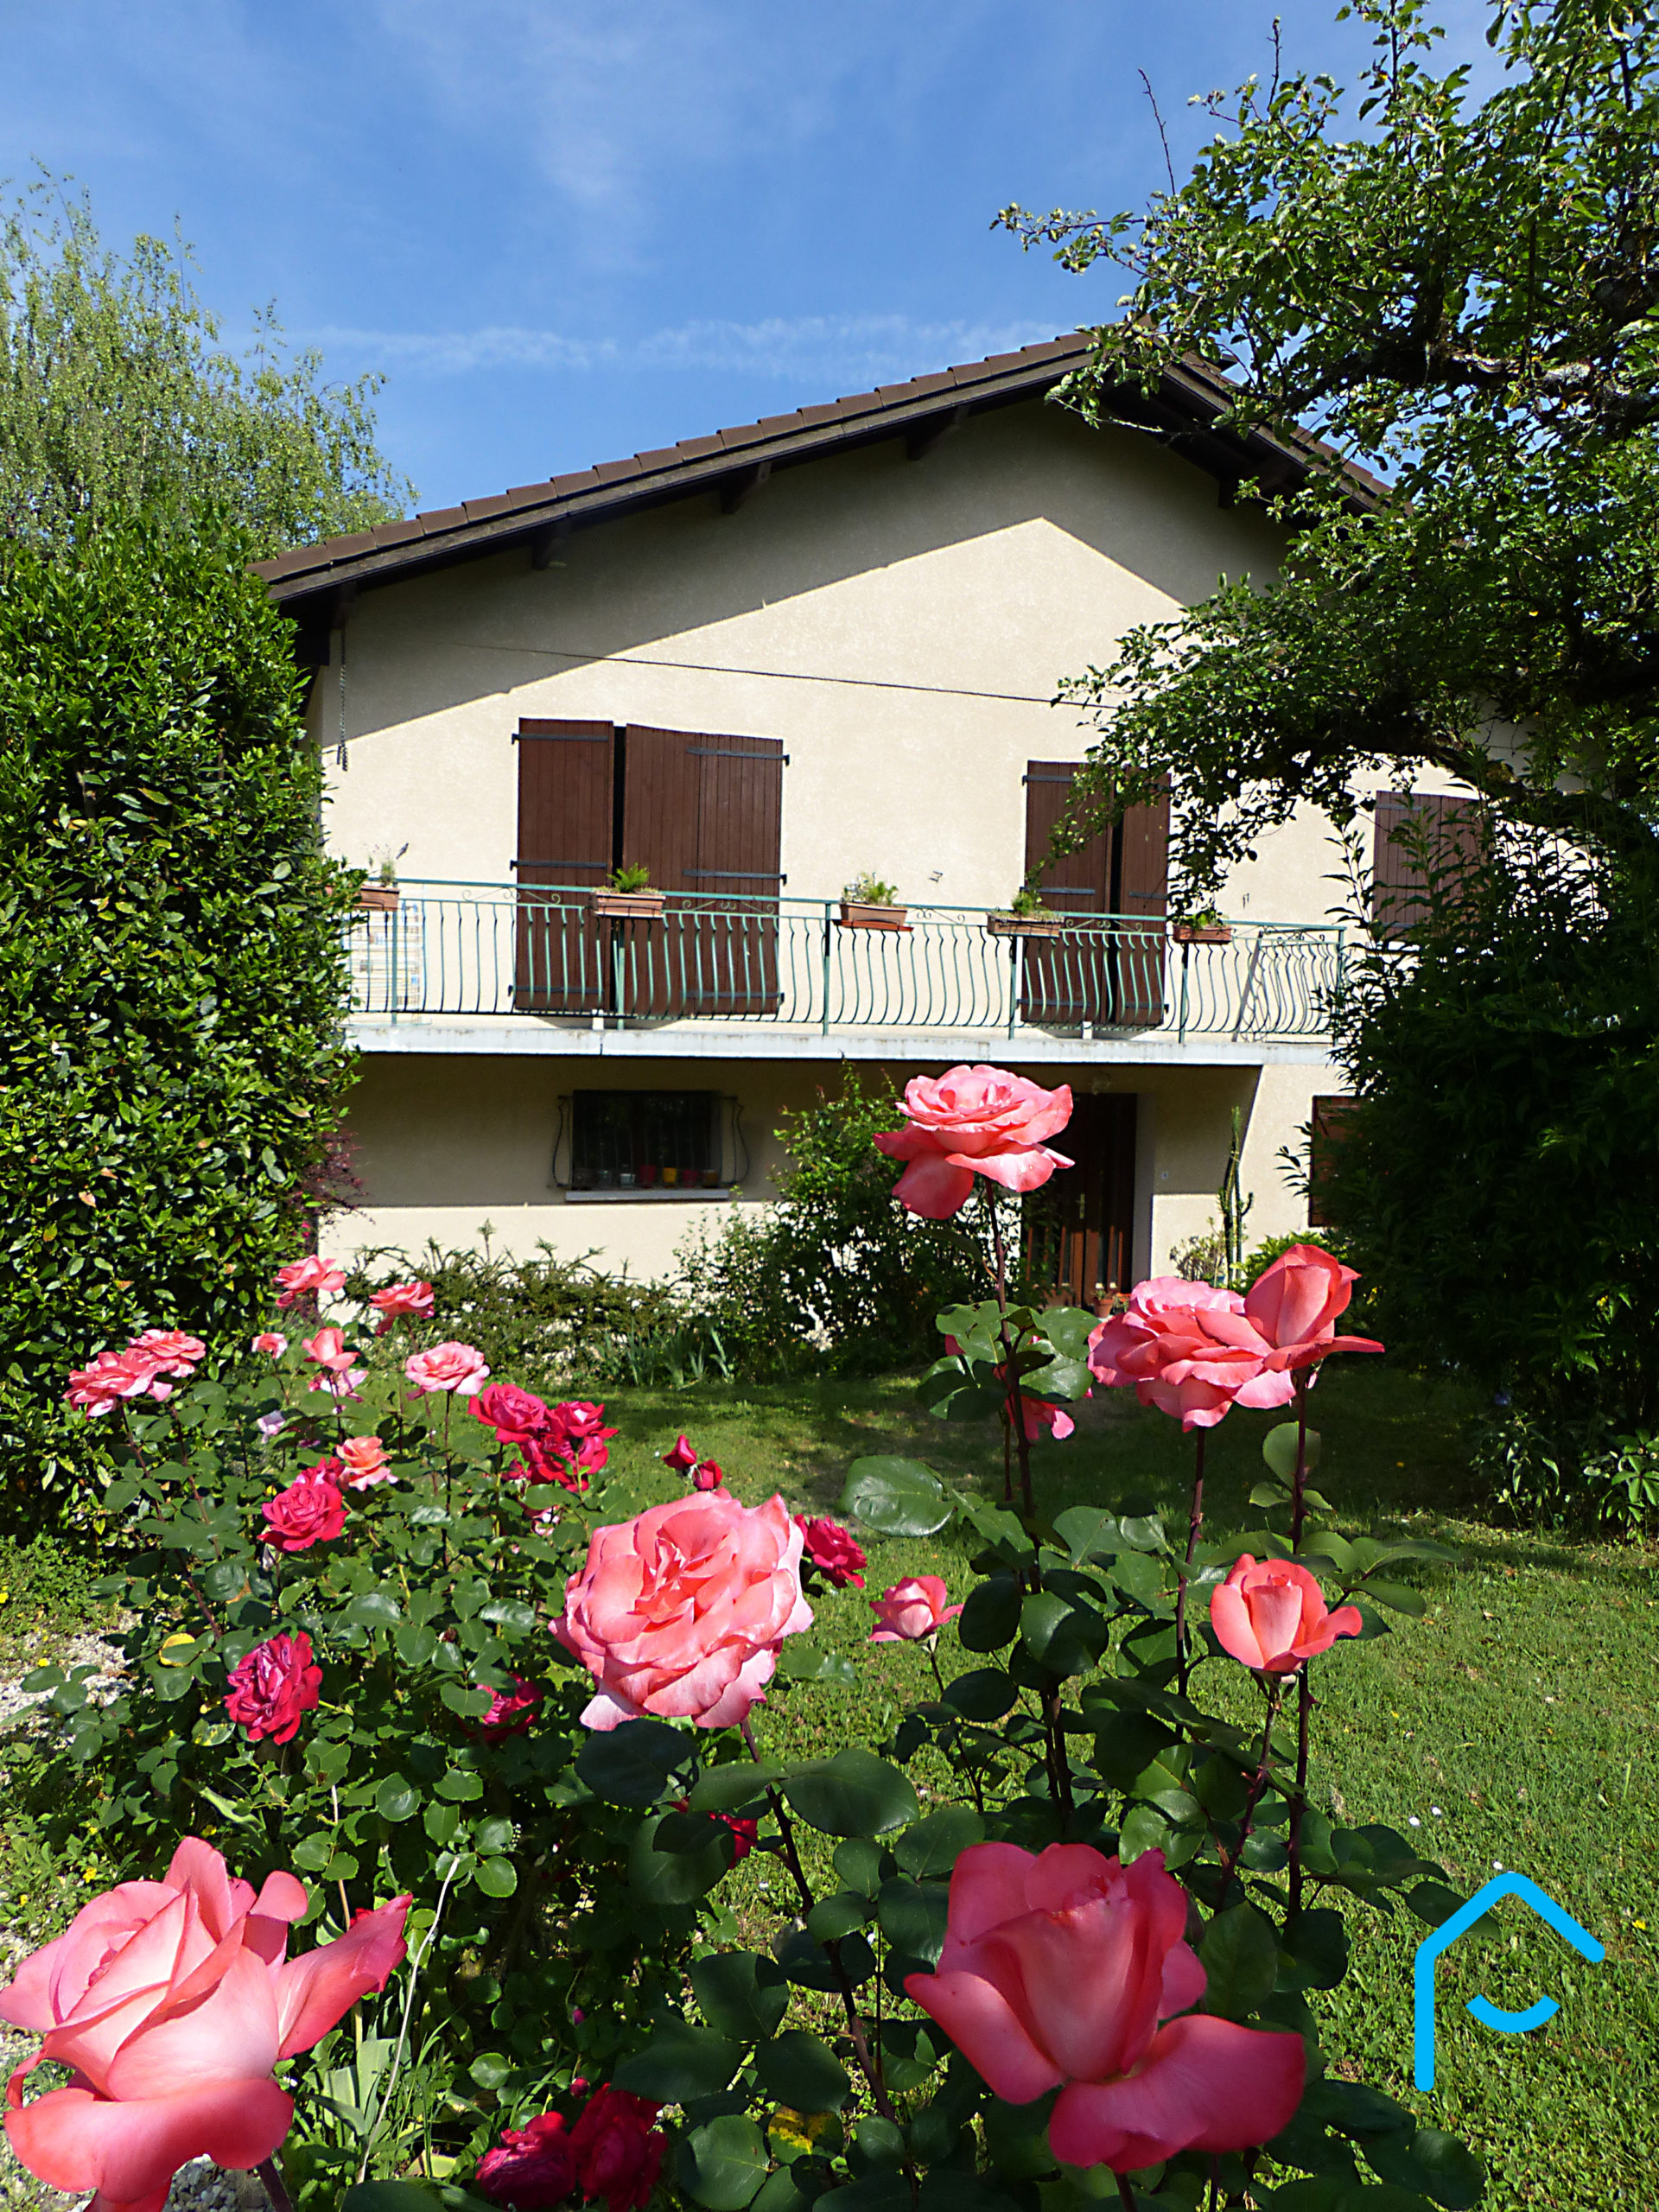 A vendre maison individuelle Jacob Bellecombette Savoie Chambéry terrain piscine jardin vue 12